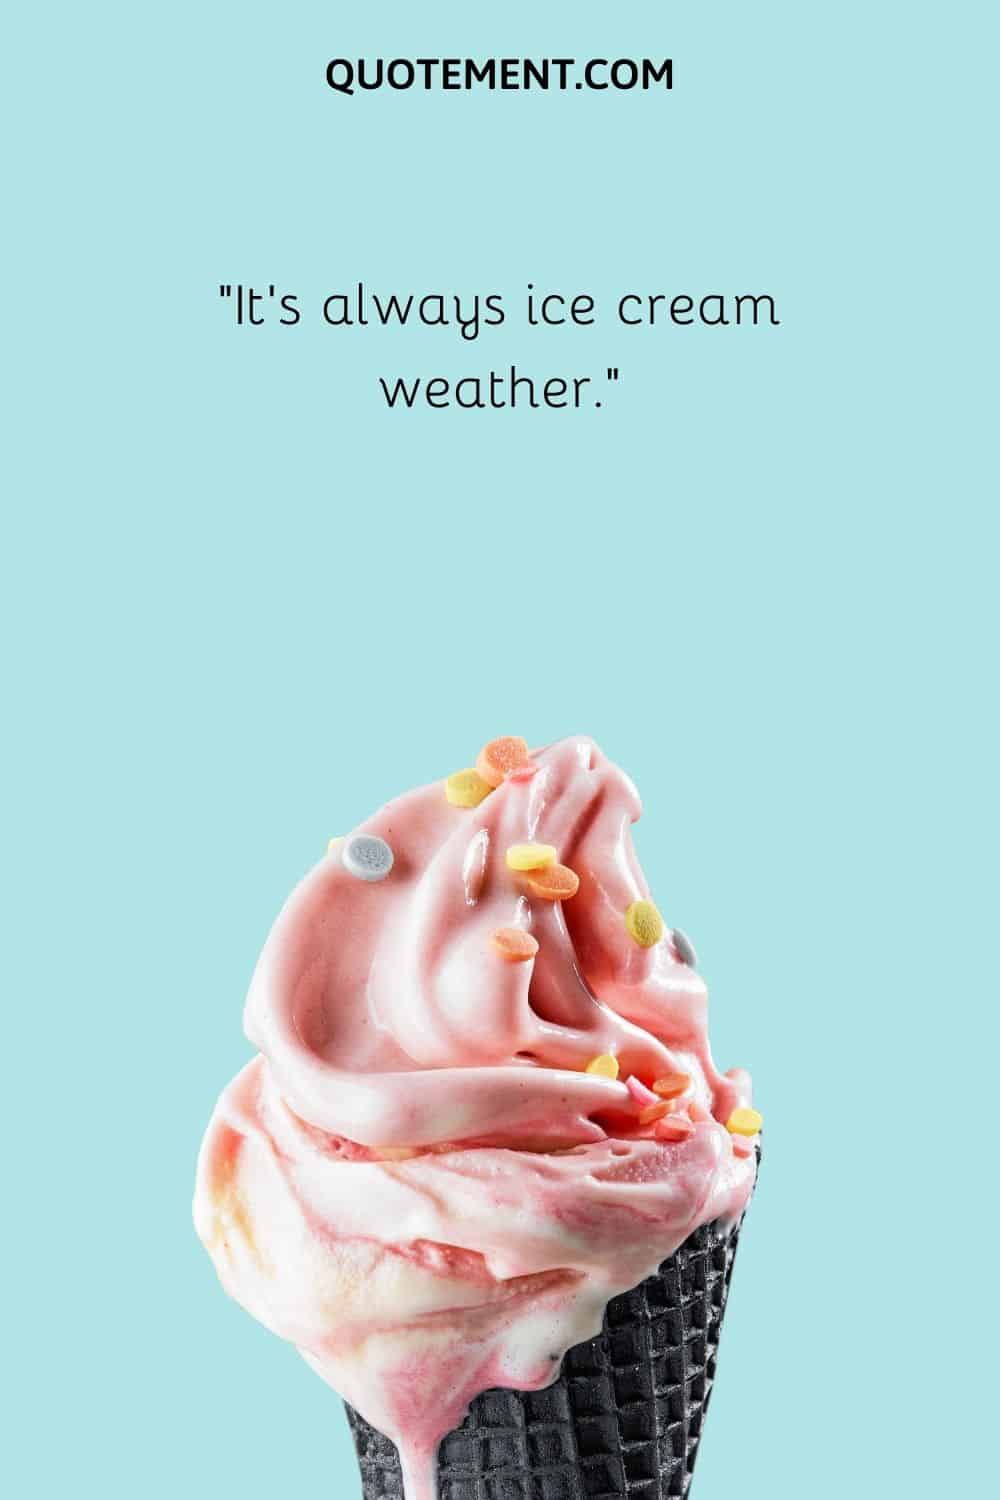 It’s always ice cream weather